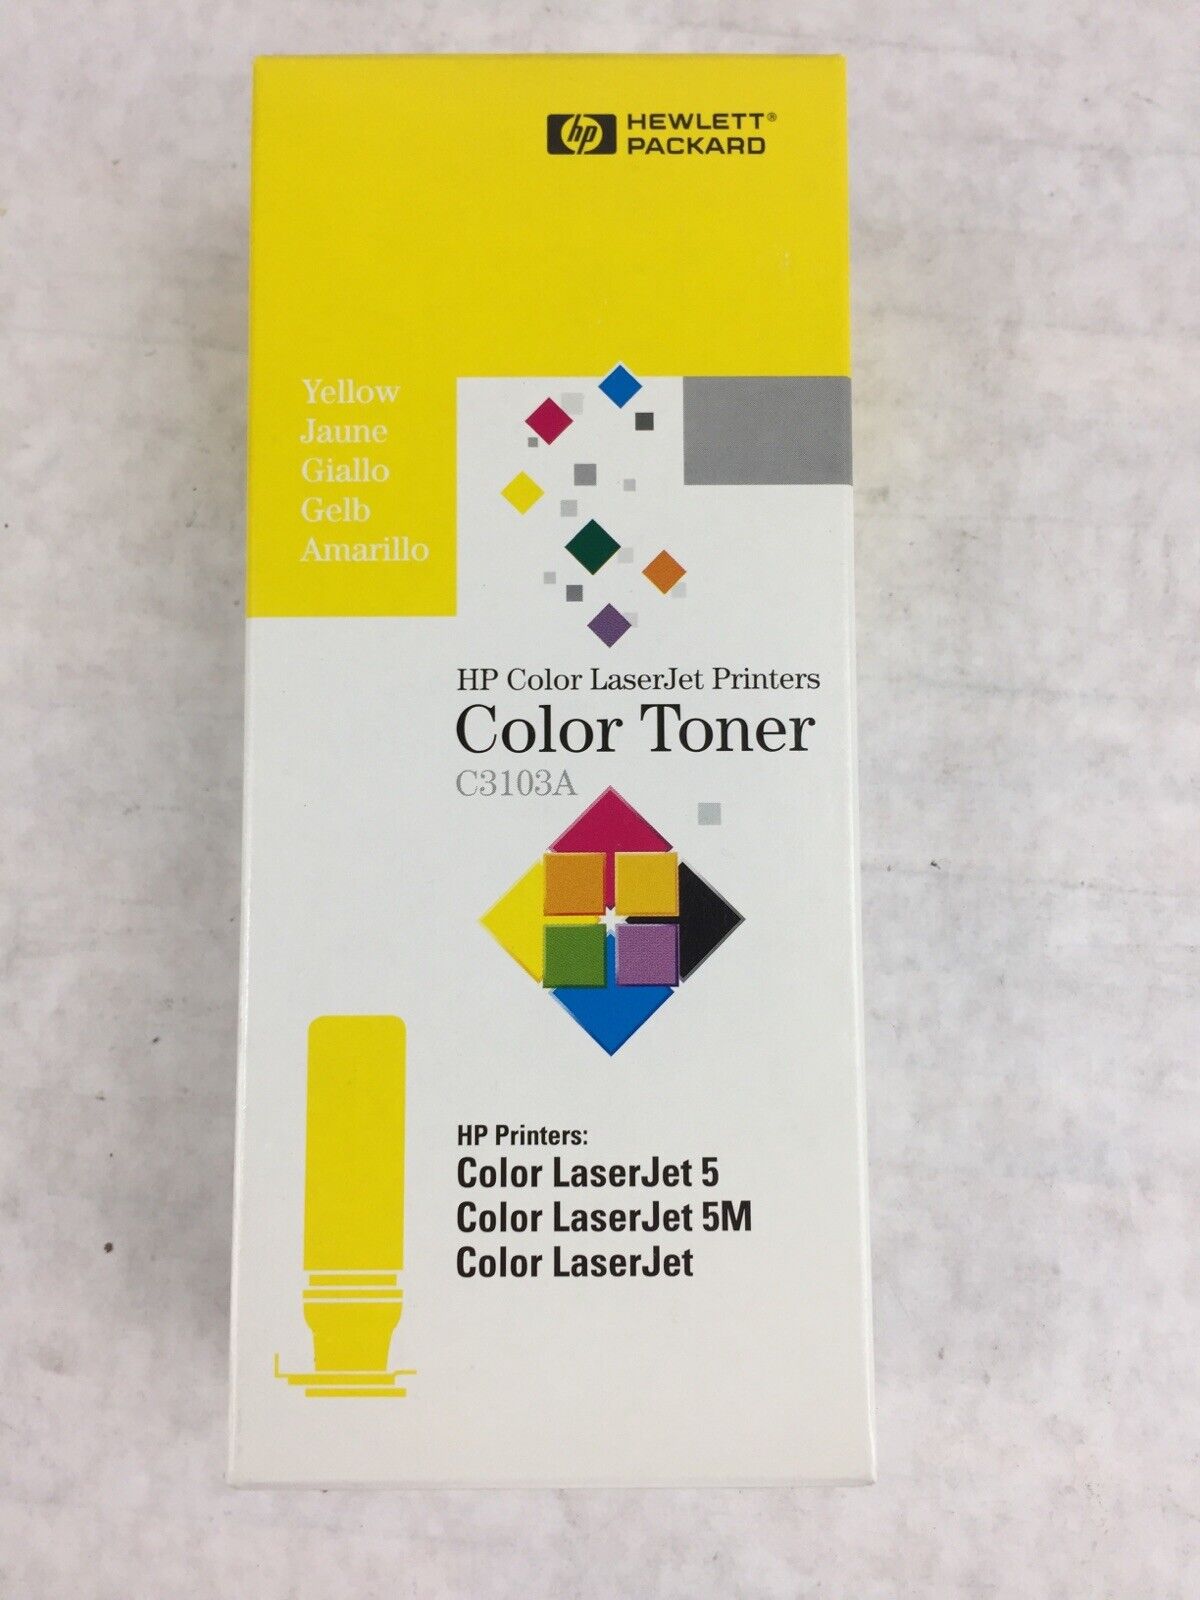 HP Color LaserJet Printers Color Toner C3103A Yellow Color LaserJet 5(M)